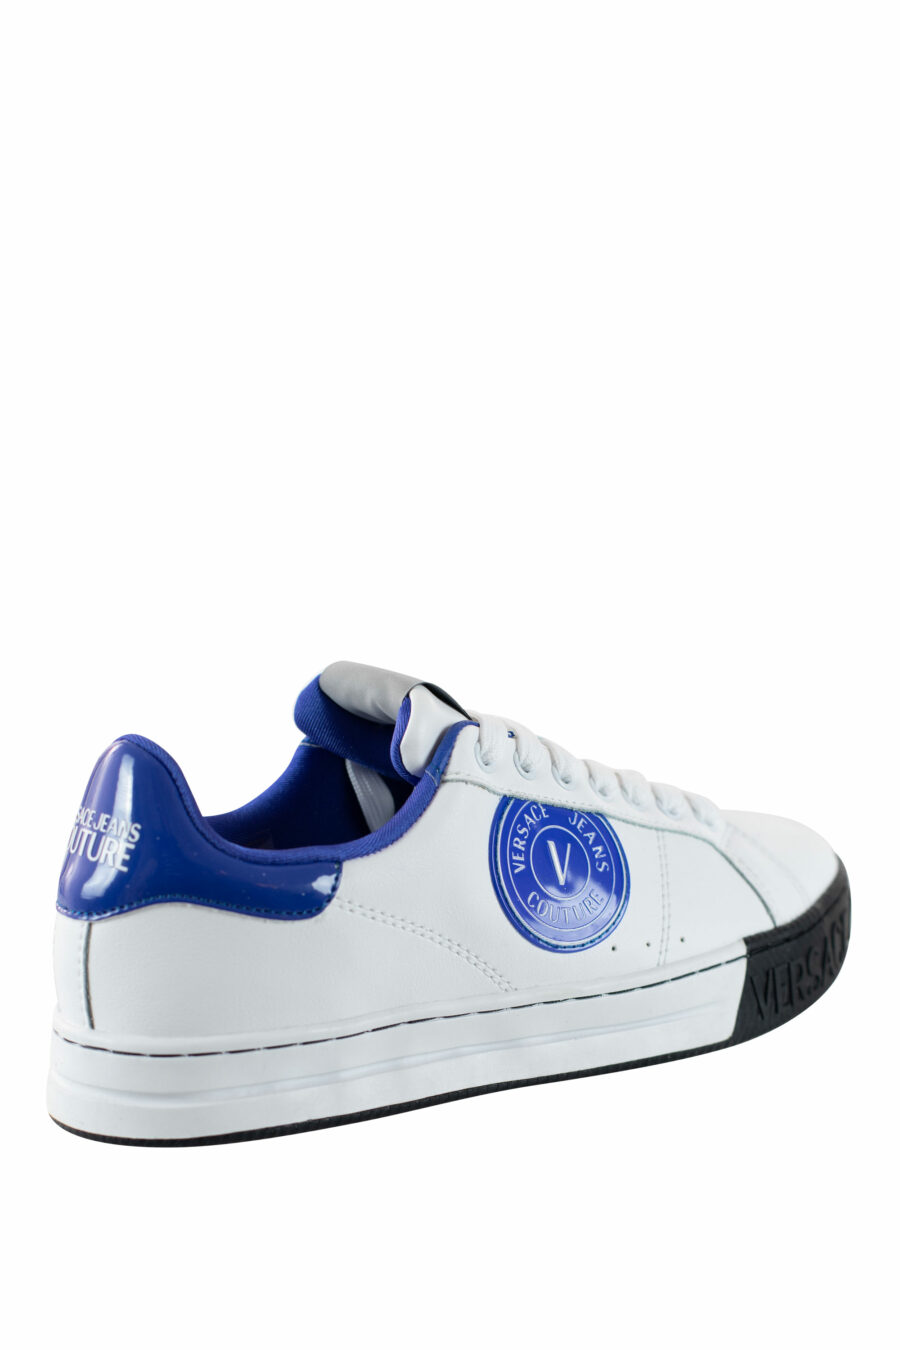 Zapatillas blancas con azul y logo circular - IMG 4503